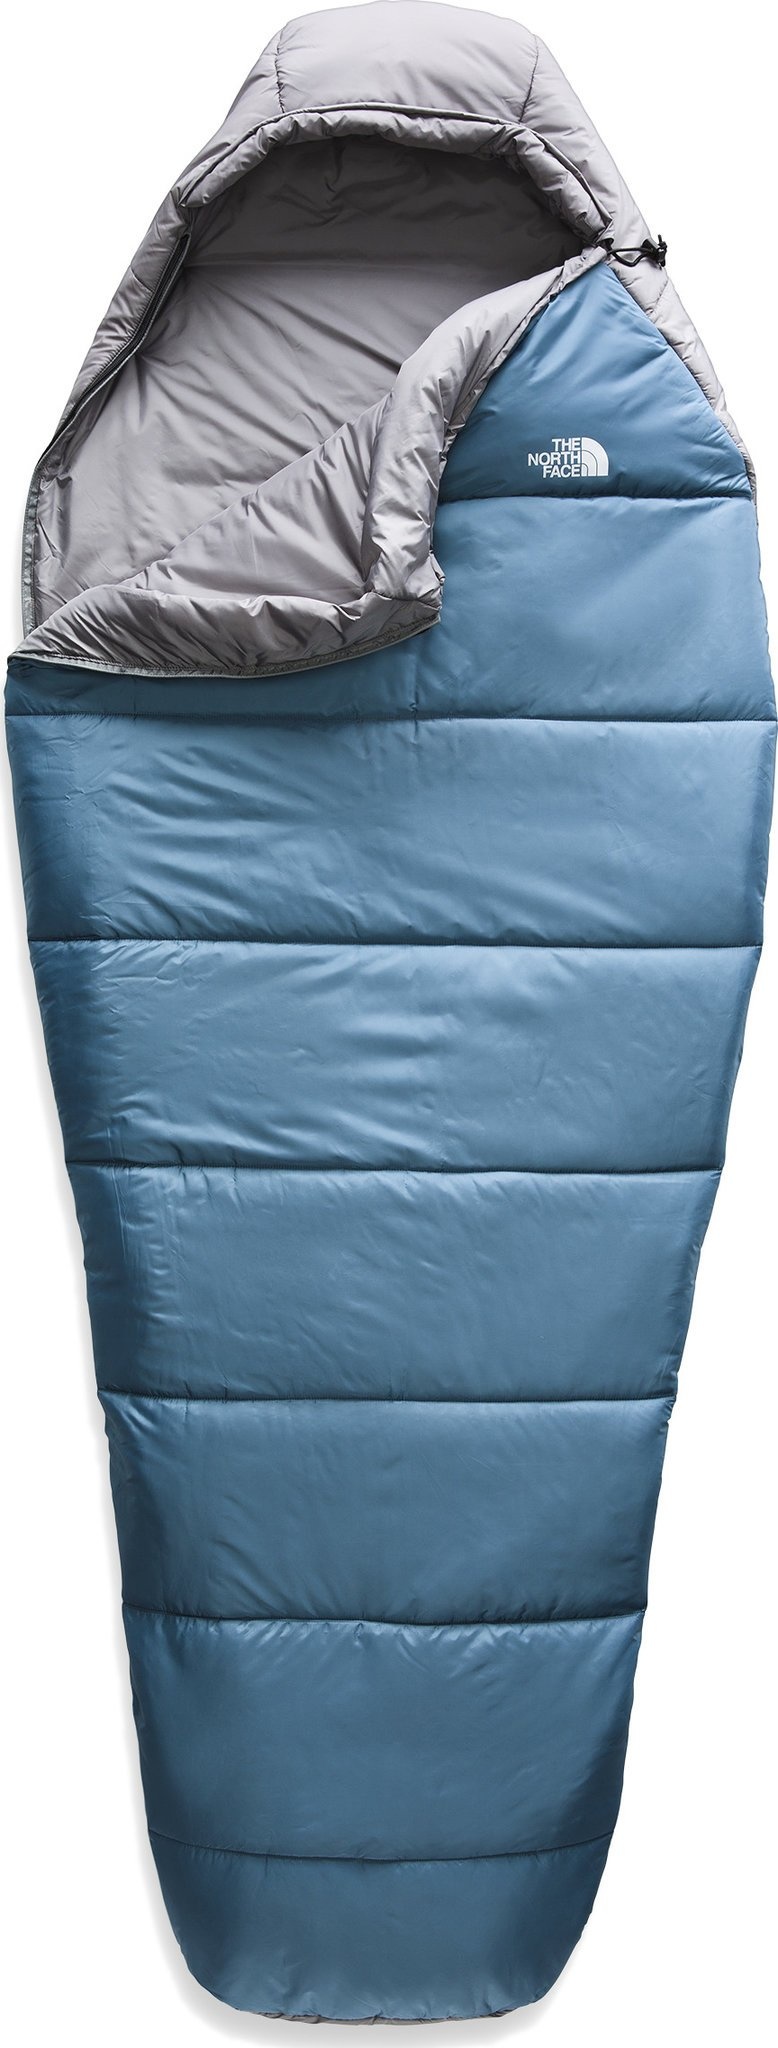 The North Face Wasatch -7 Sleeping Bag. Regular Right Hand Zipper